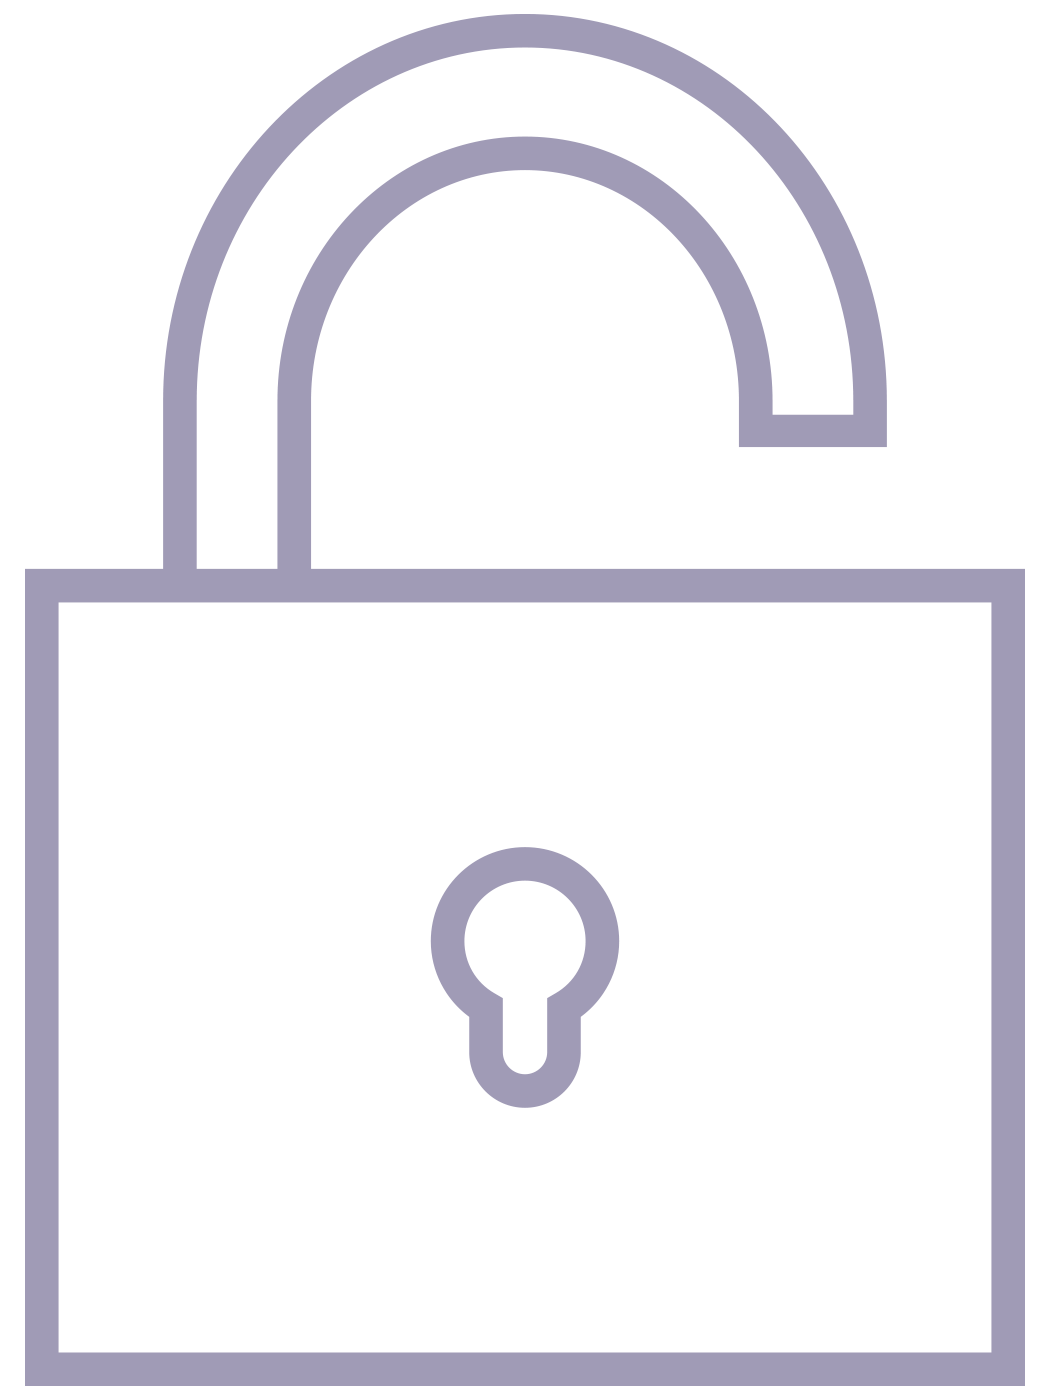 Um ícone de um cadeado aberto, representando a abertura para o compromisso número um